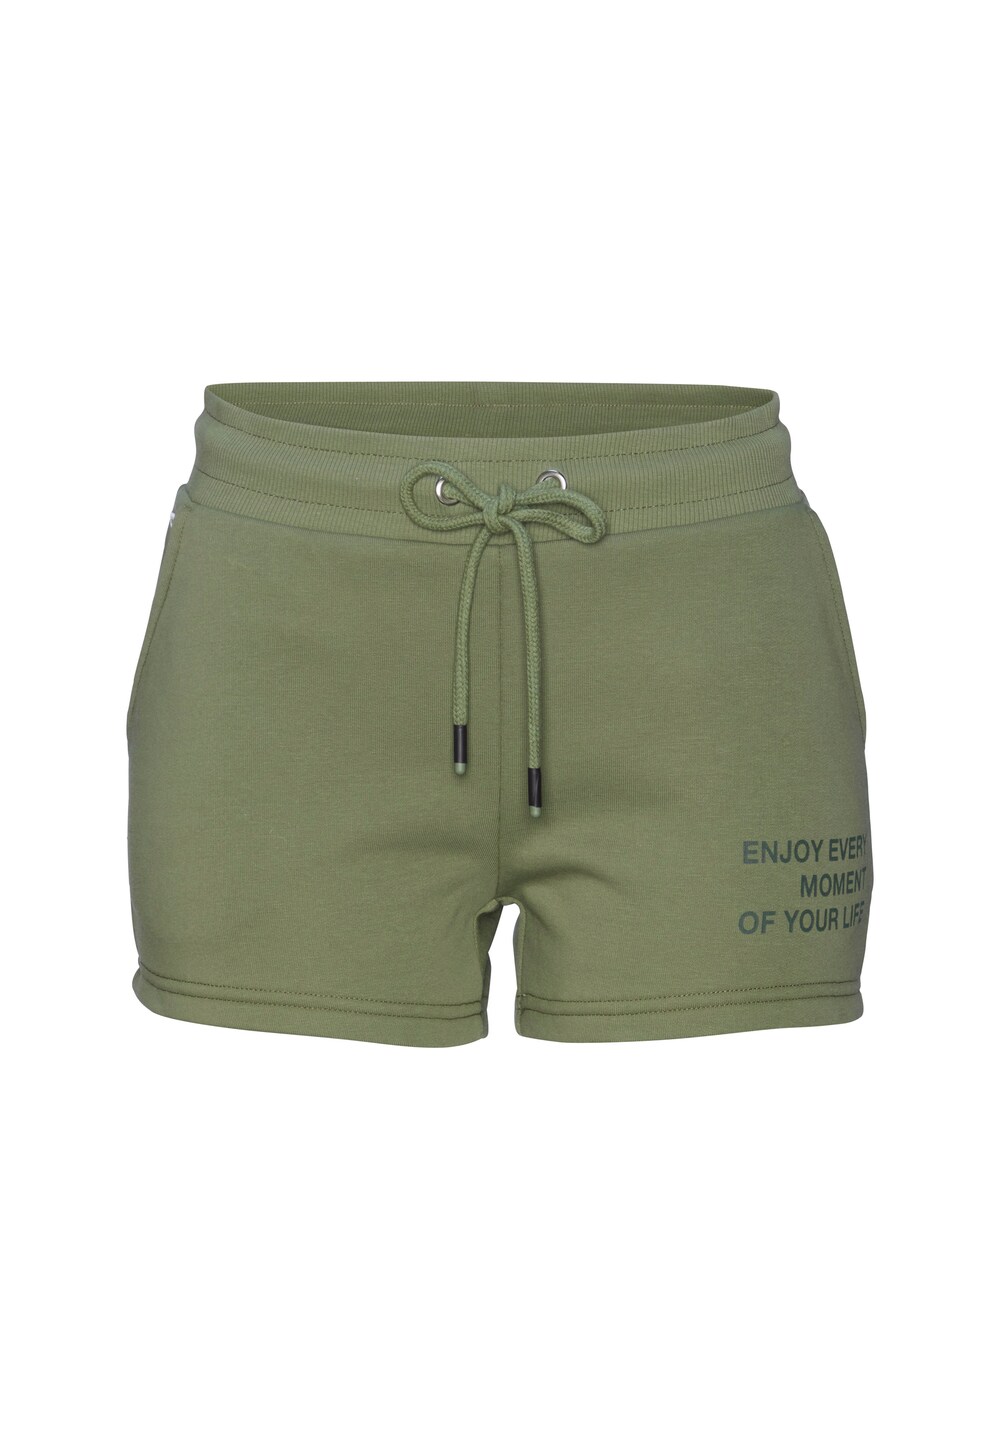 Обычные брюки BUFFALO, зеленый